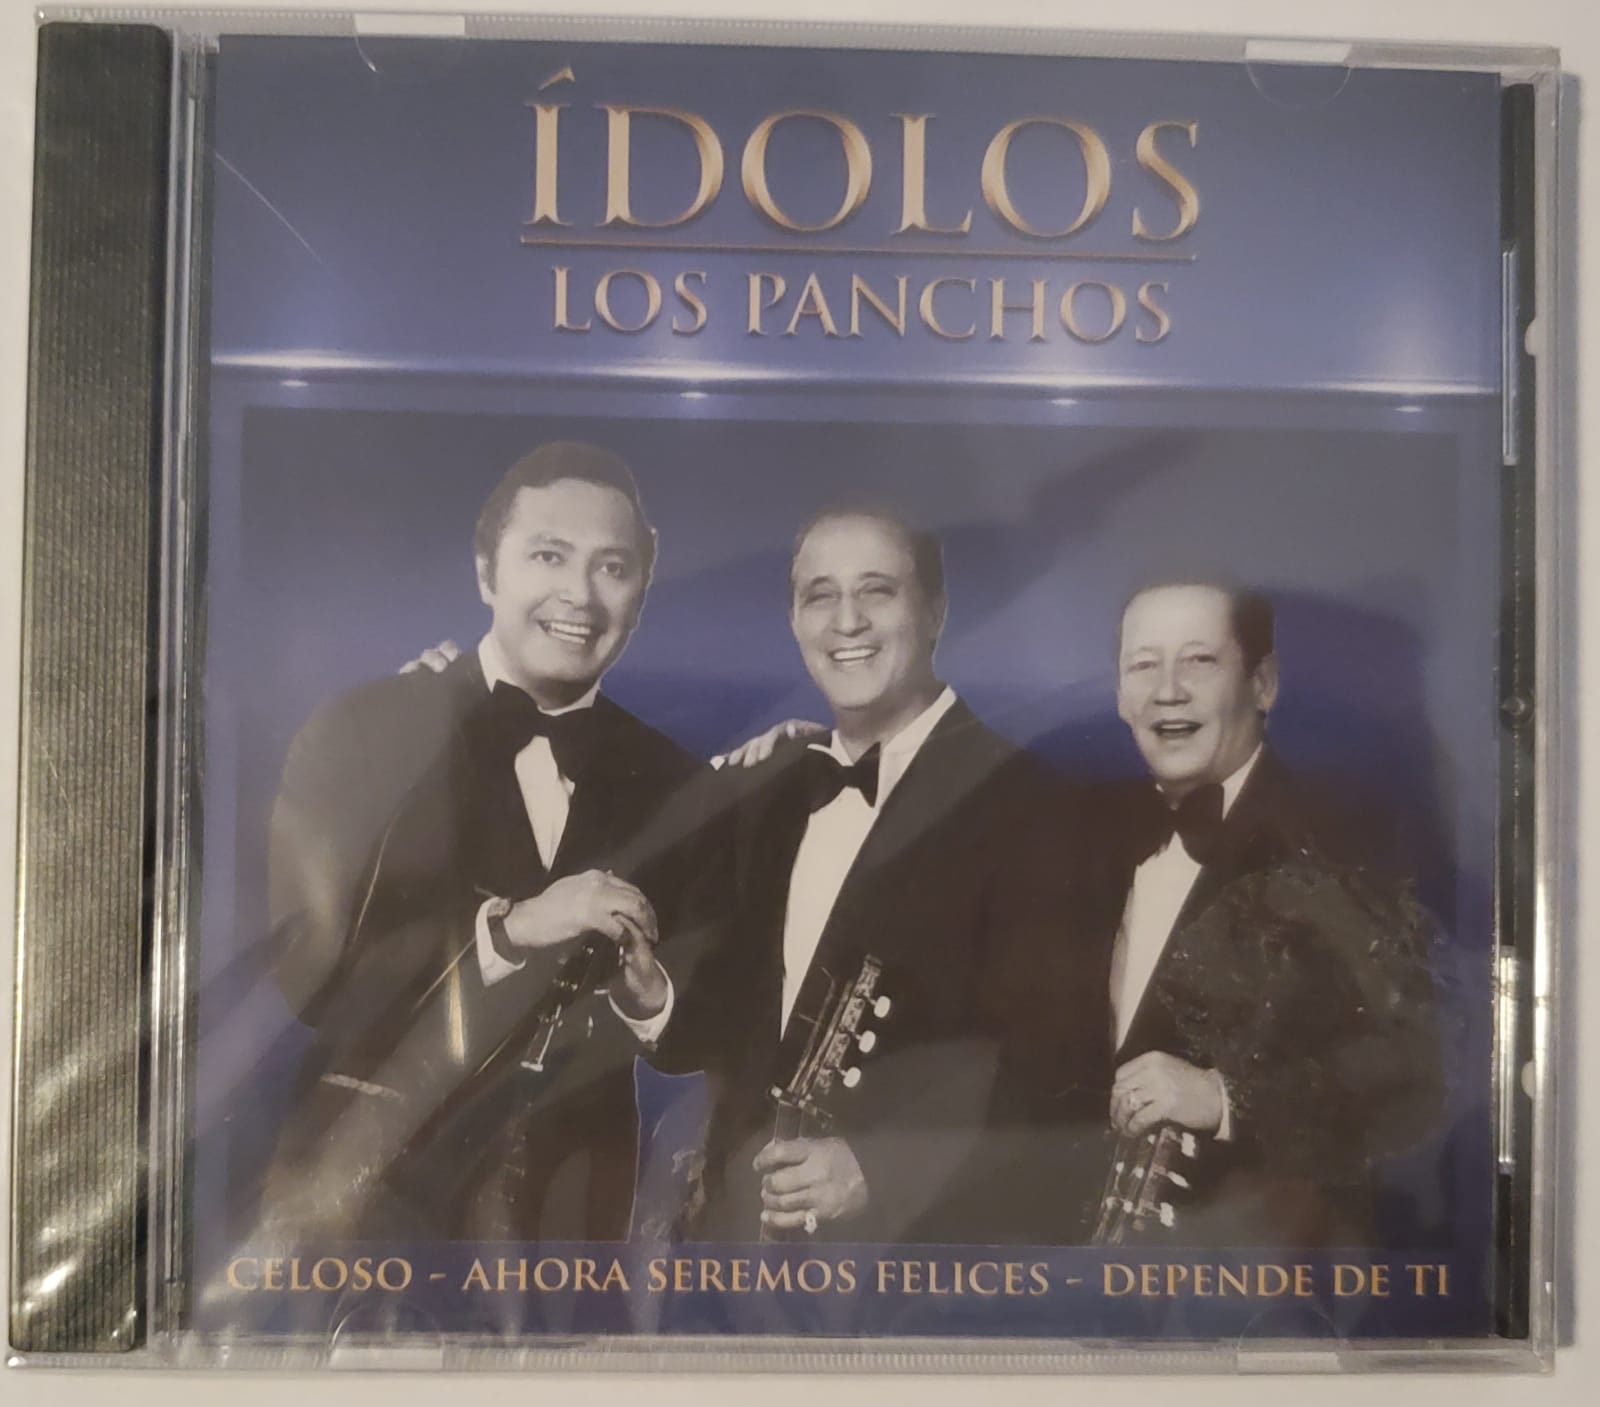 CD Los Panchos - Ídolos: Los Panchos (Celoso, Ahora Seremos Felices, Depende de Tí)